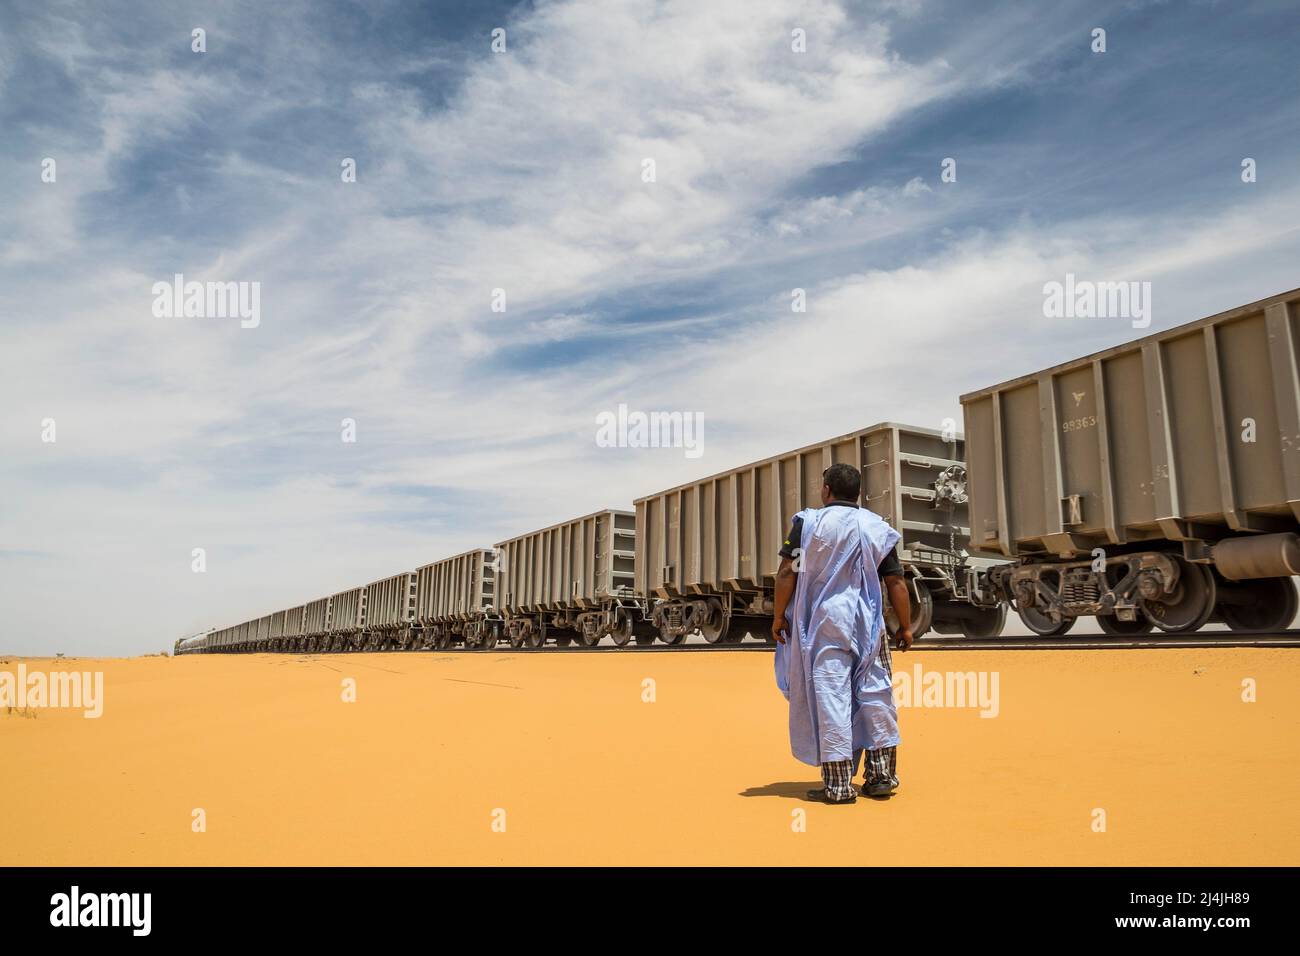 La Mauritanie, le plus long chemin de fer au monde, relie Nouadhibou à Zouerat Banque D'Images